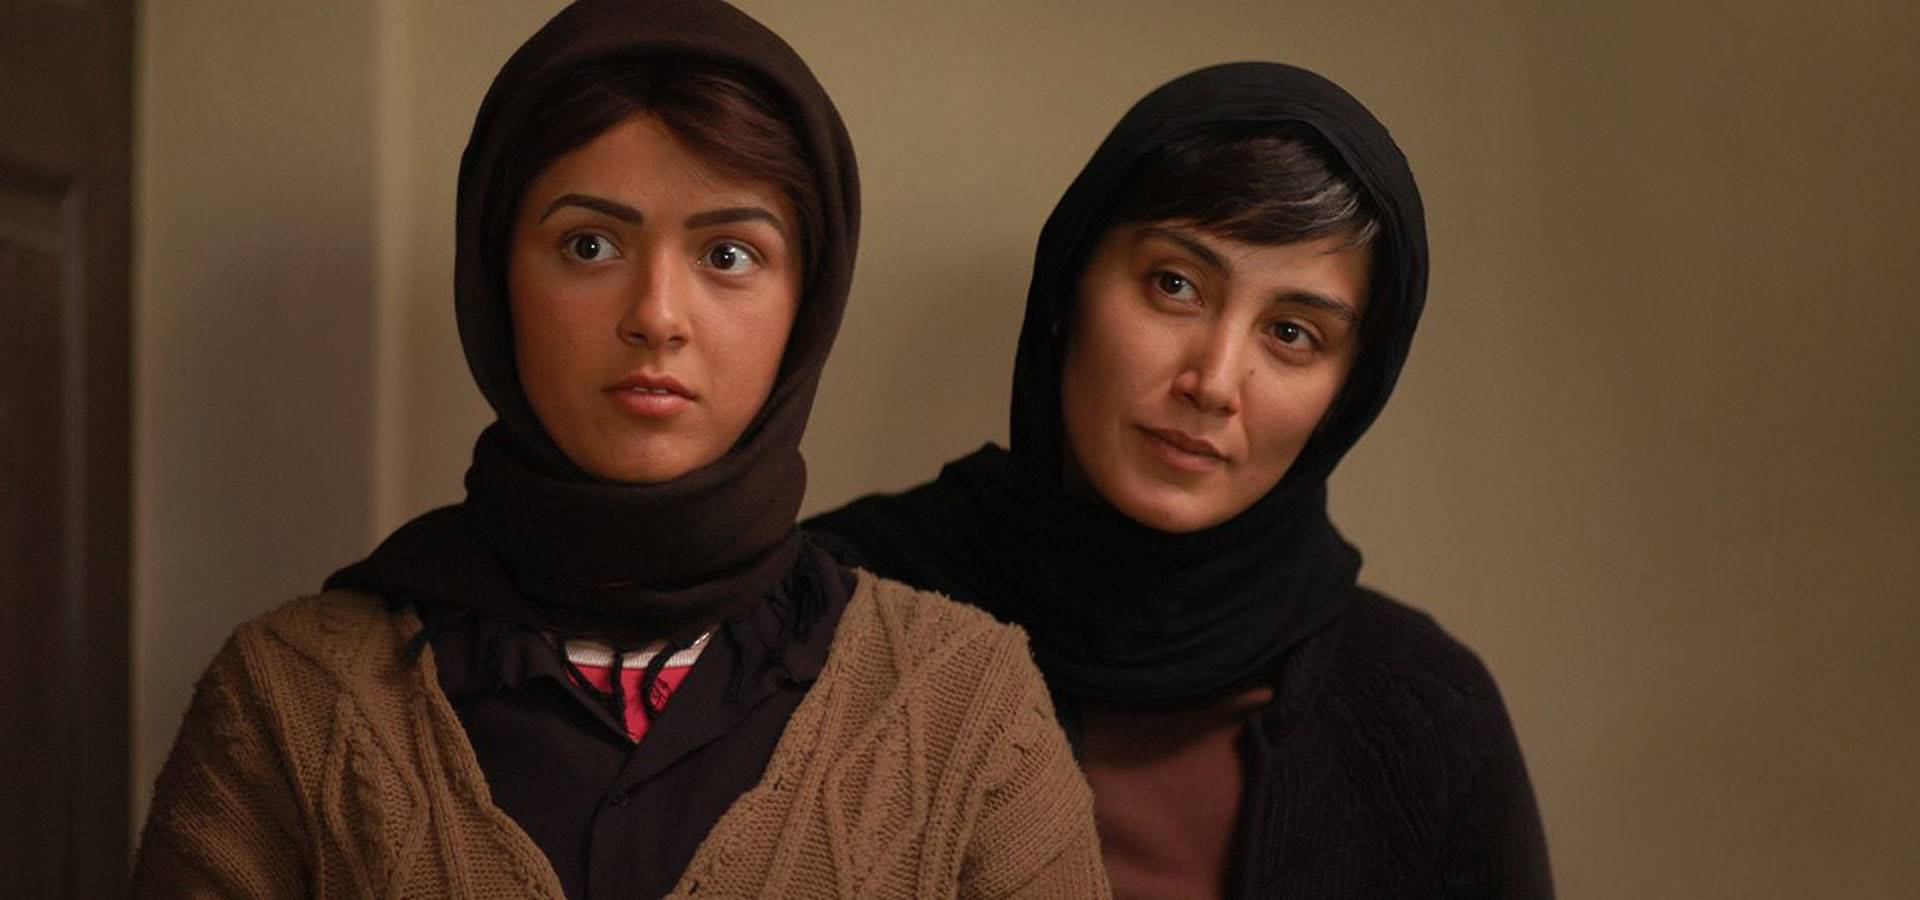 نگاهی به فیلم چهارشنبه سوری اثر اصغر فرهادی